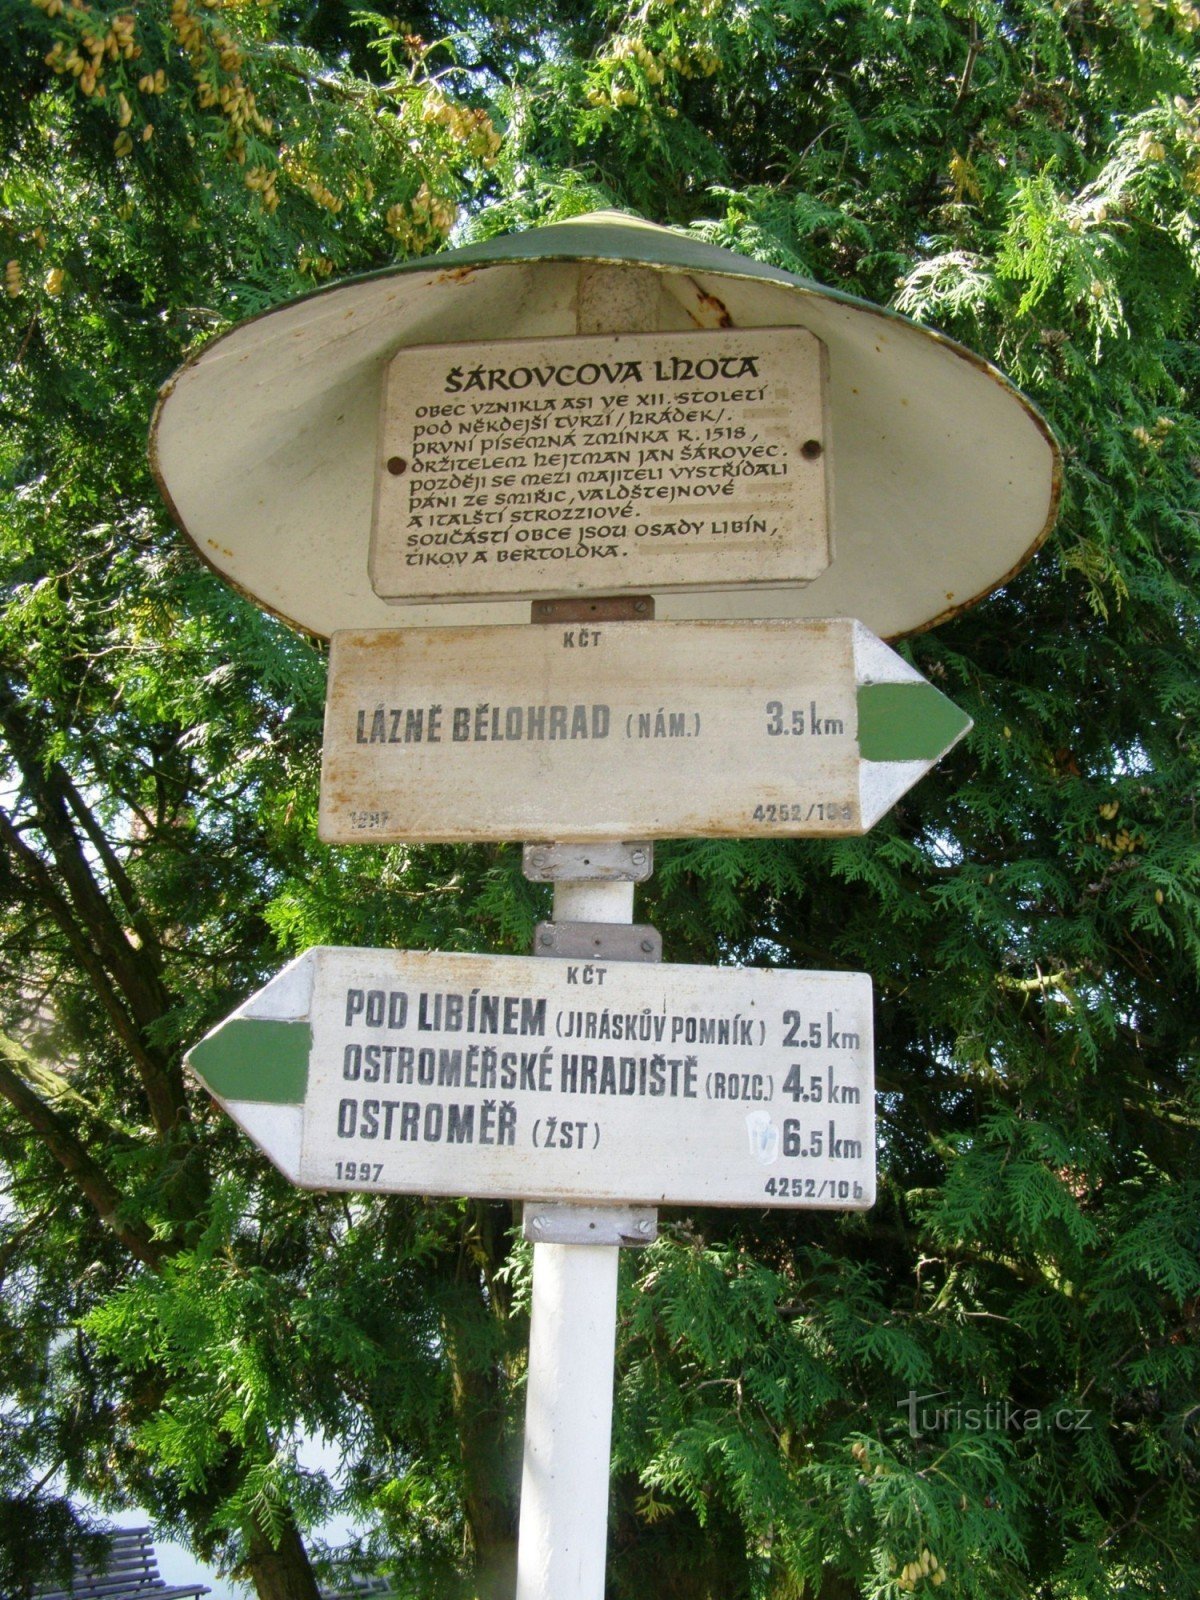 die touristische Kreuzung von Šárovcova Lhota